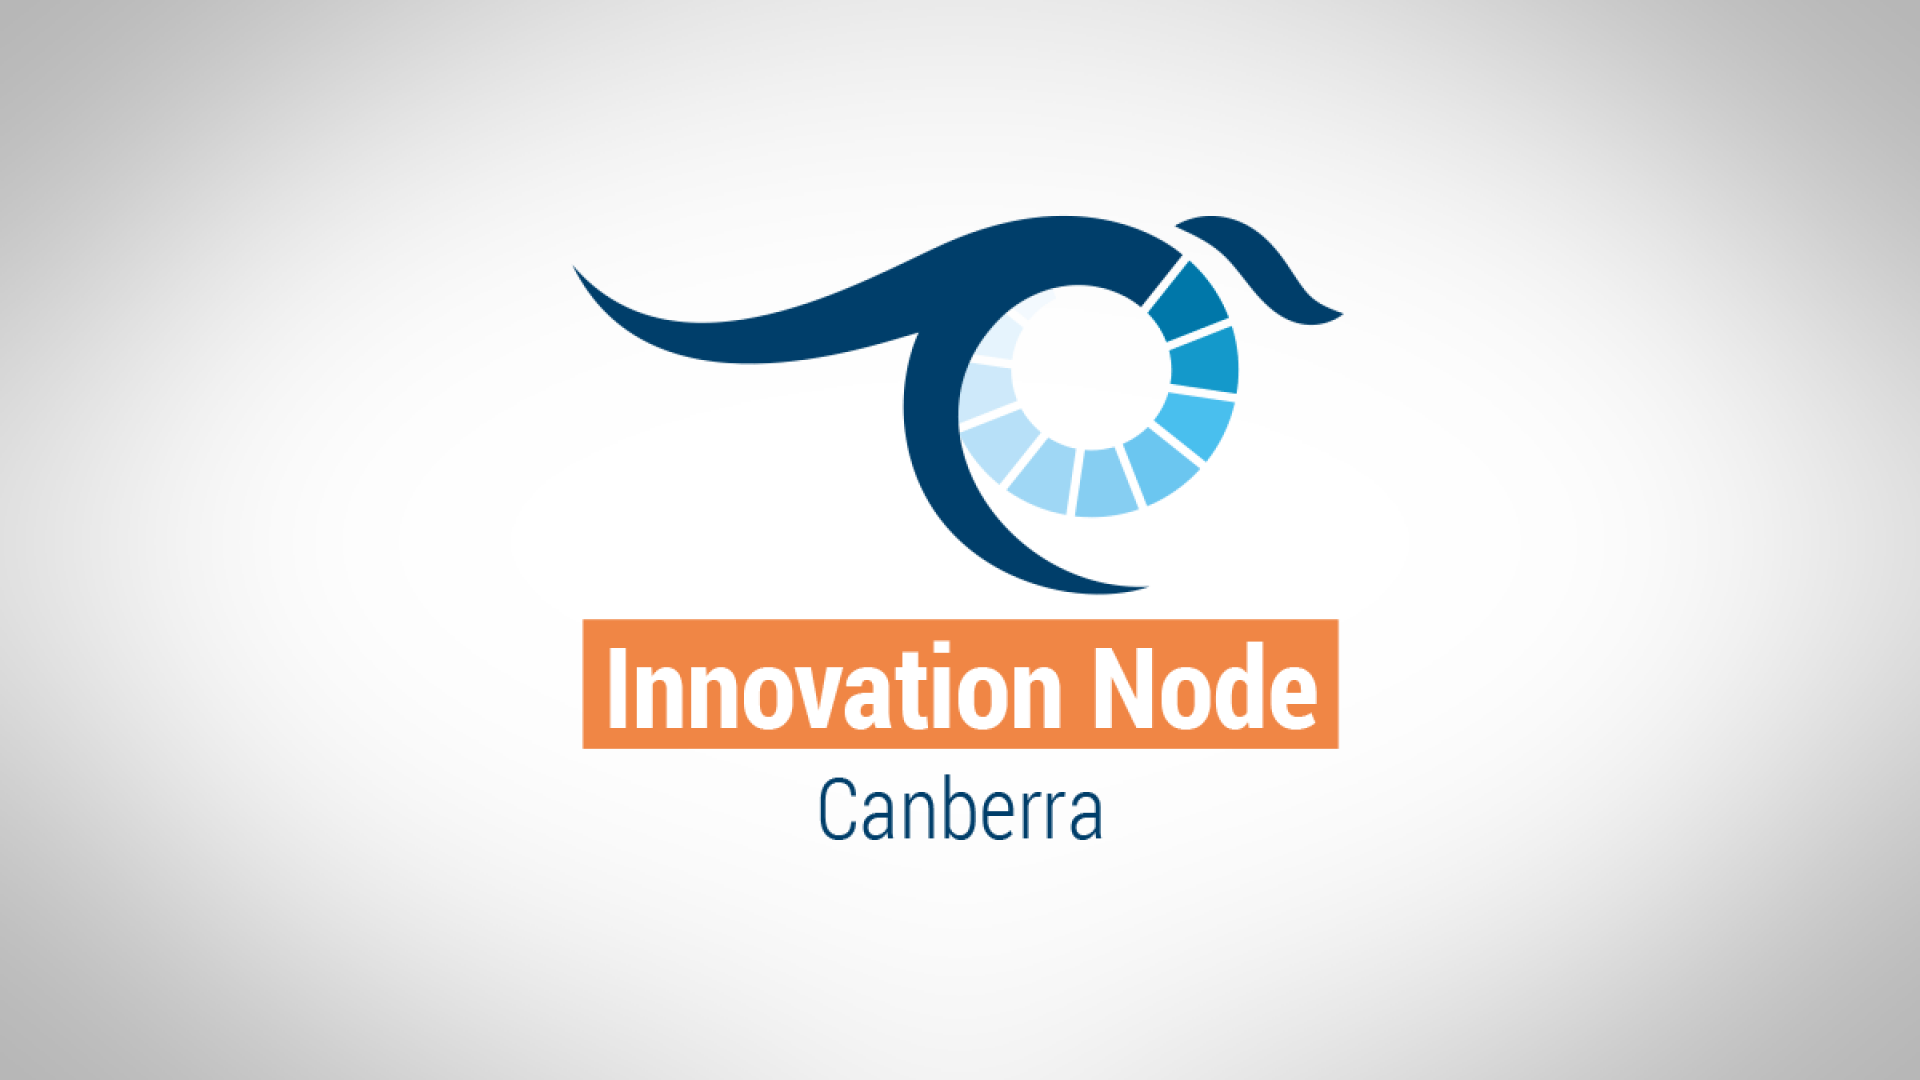 Innovation Node Canberra